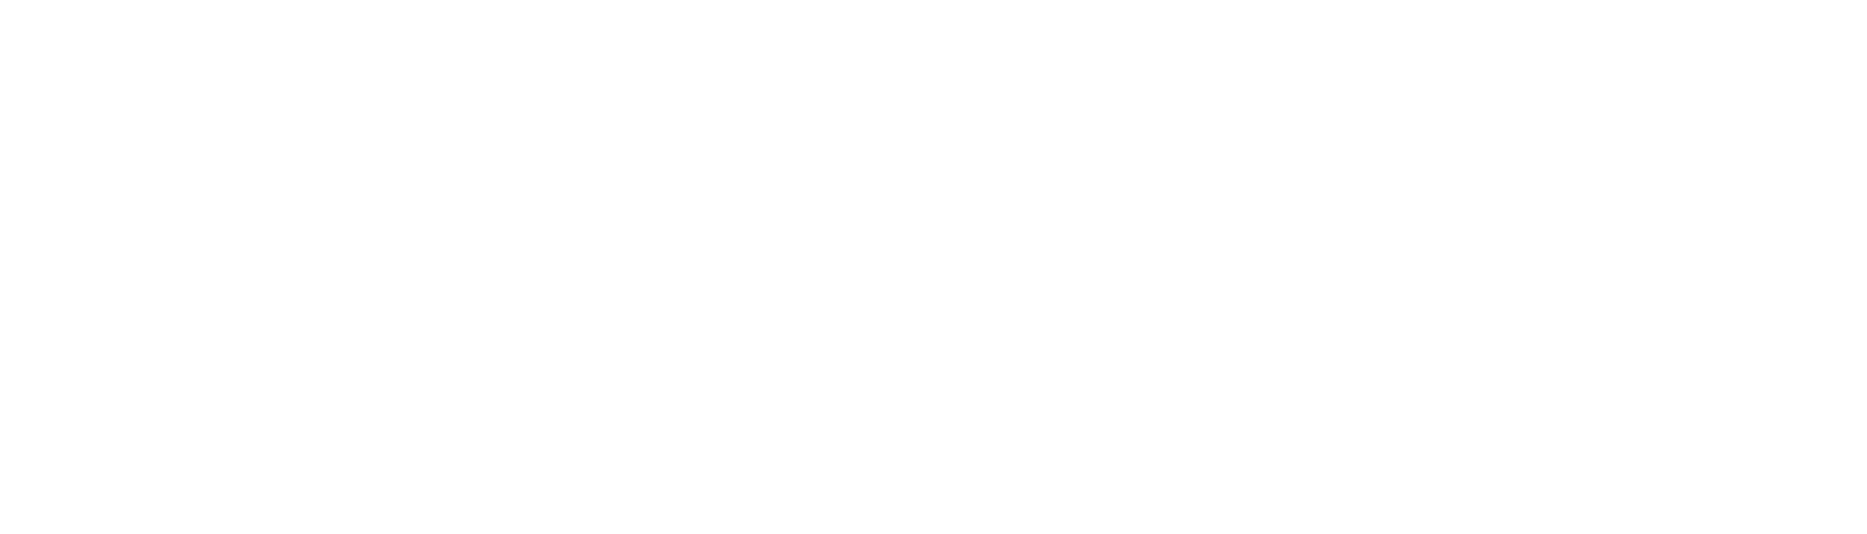 EliteBasketballMedia_AW